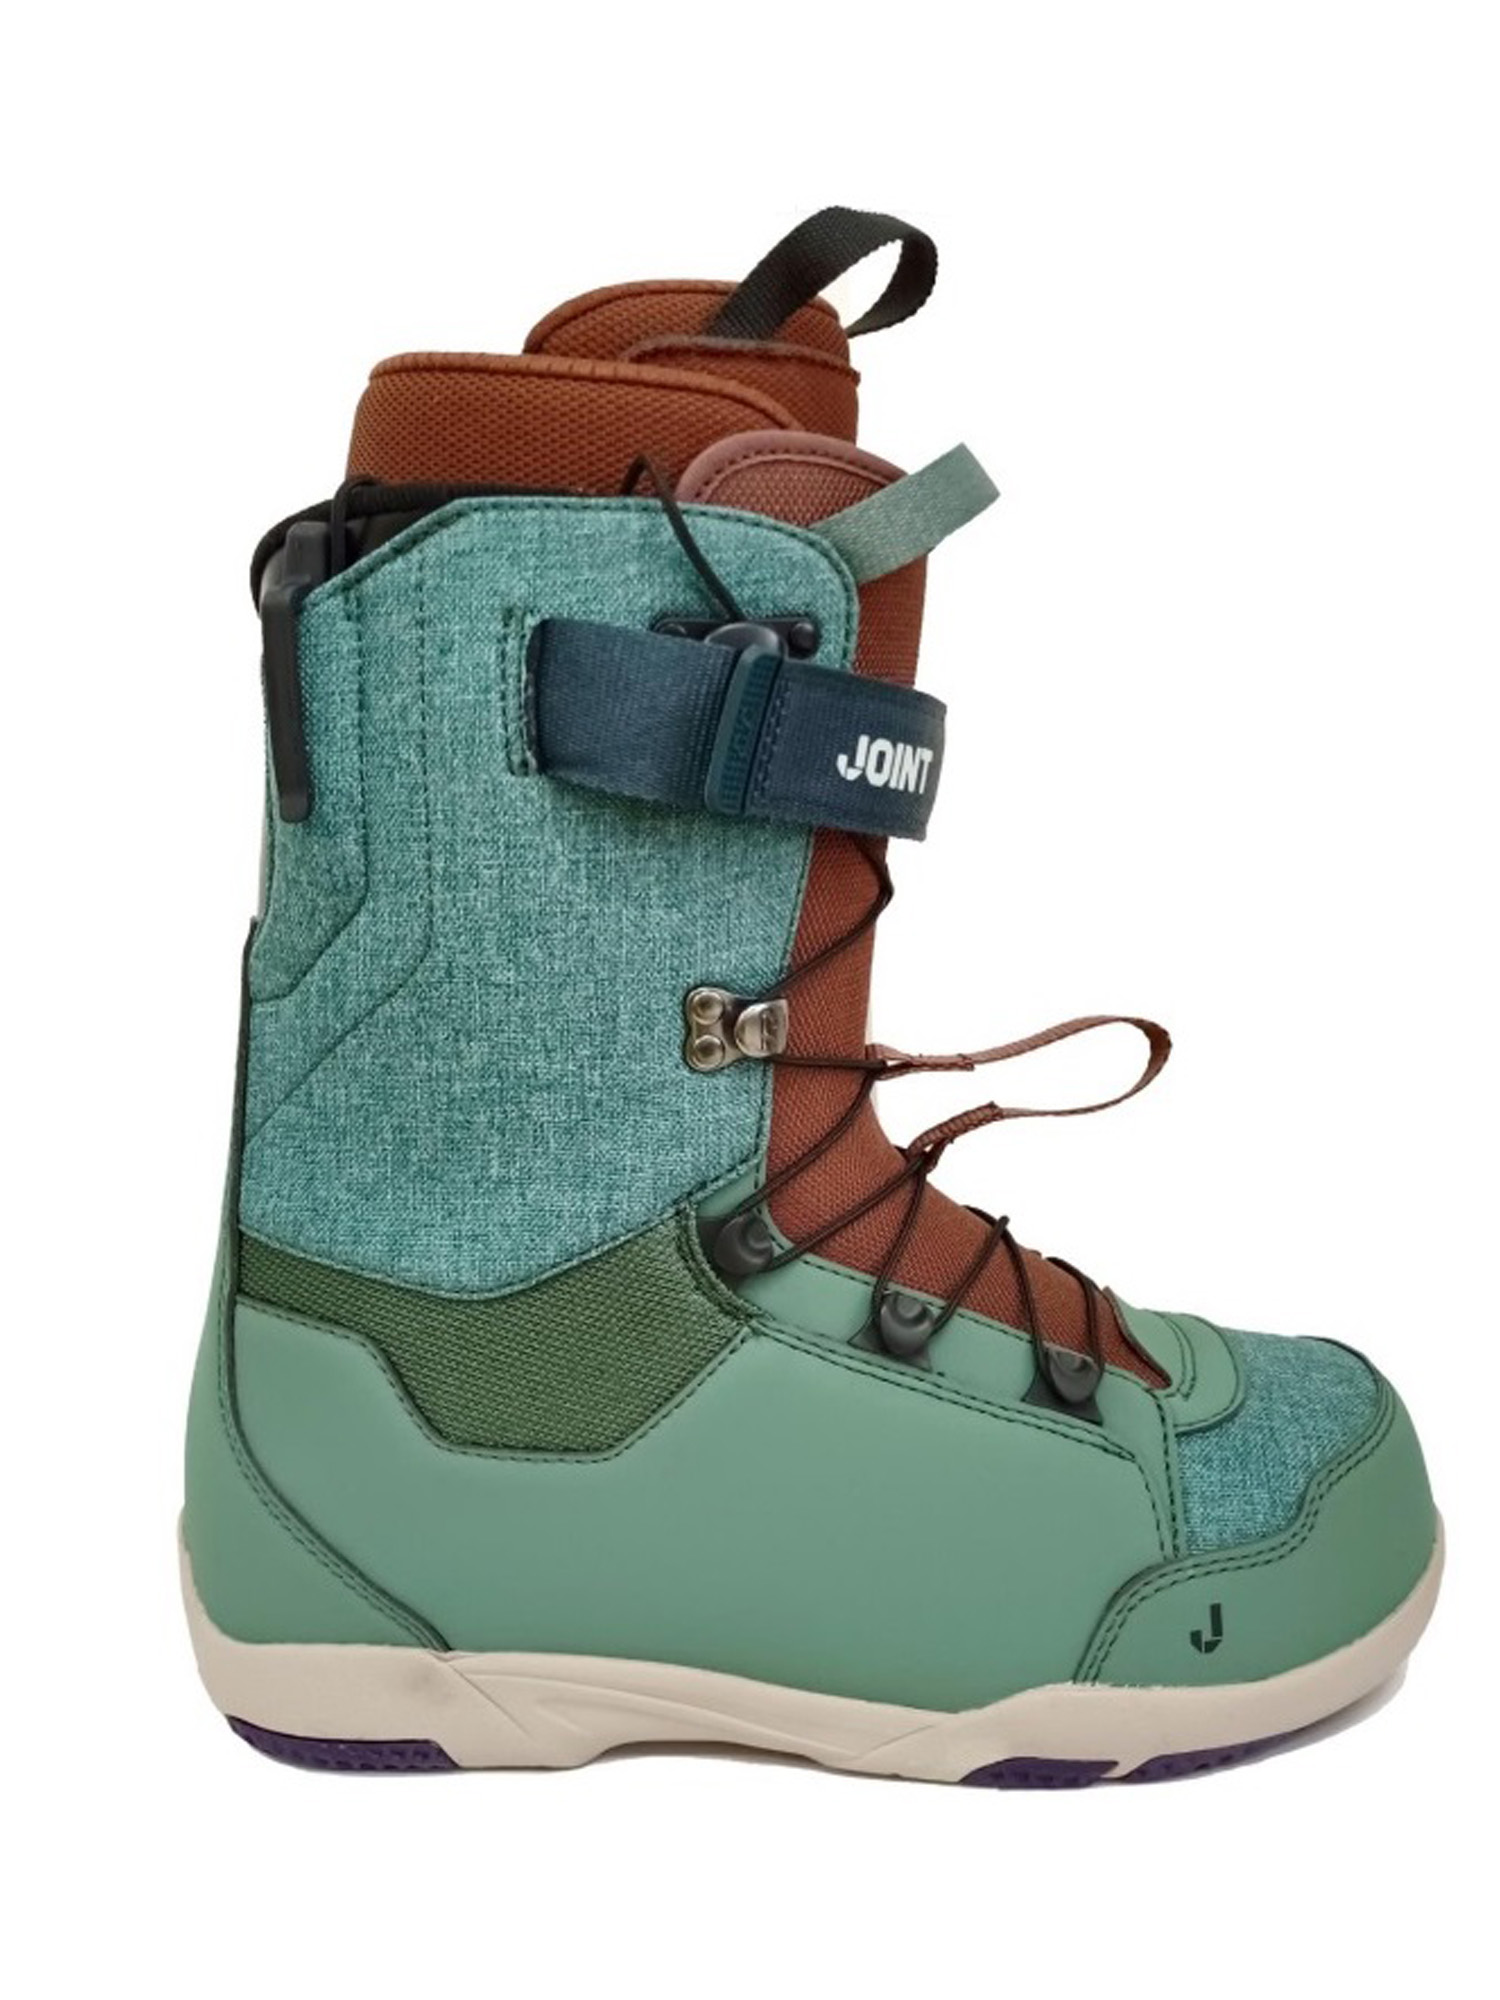 Ботинки для сноуборда Joint  At One's Ease 2023 dark green/brown 25 см